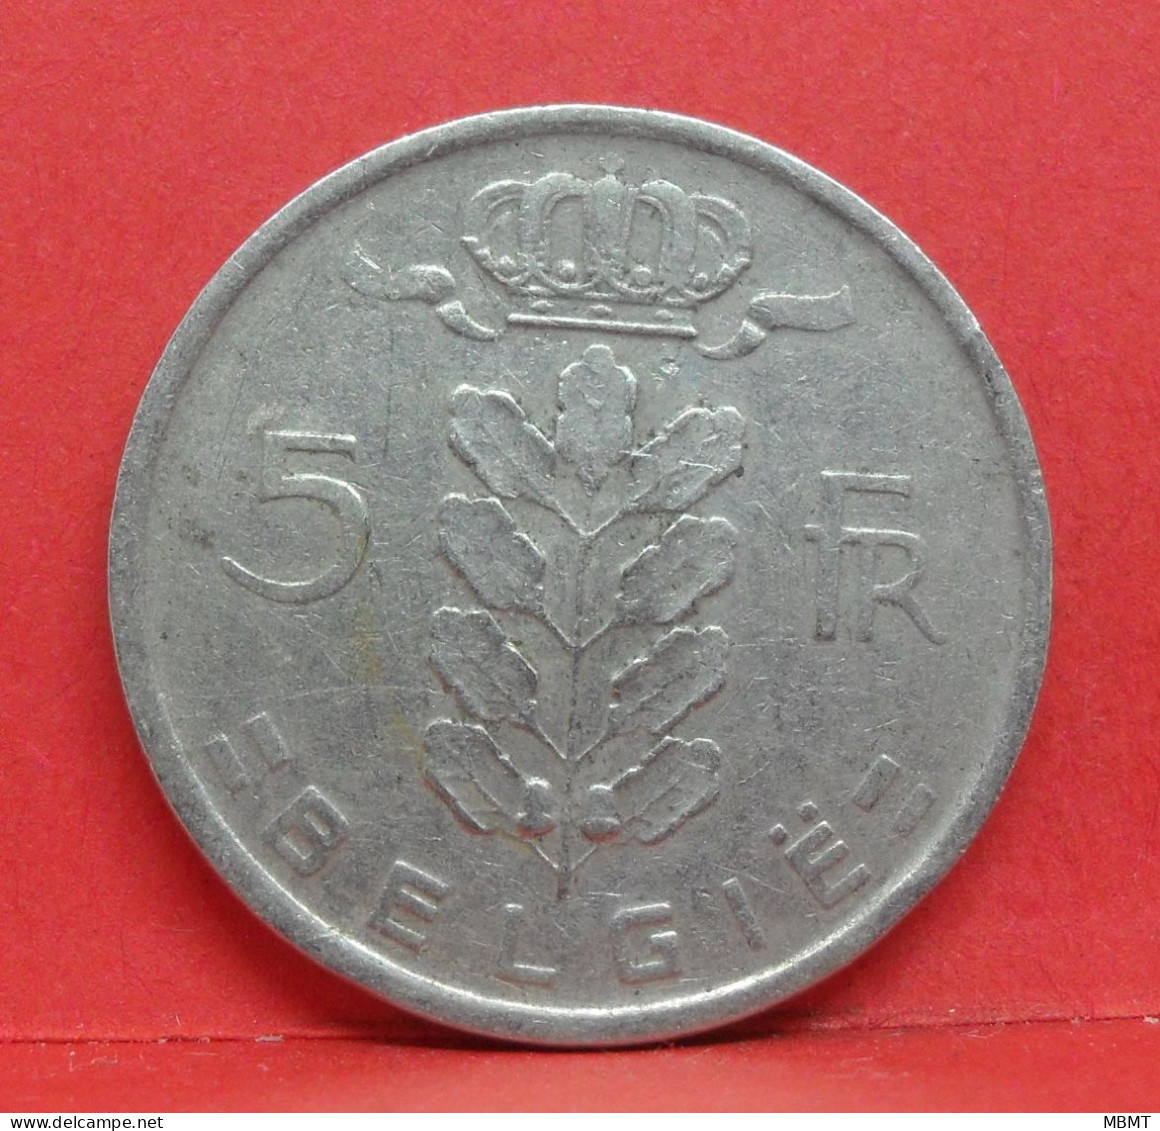 5 Frank 1948 - TB - Pièce Monnaie Belgie - Article N°1975 - 5 Francs